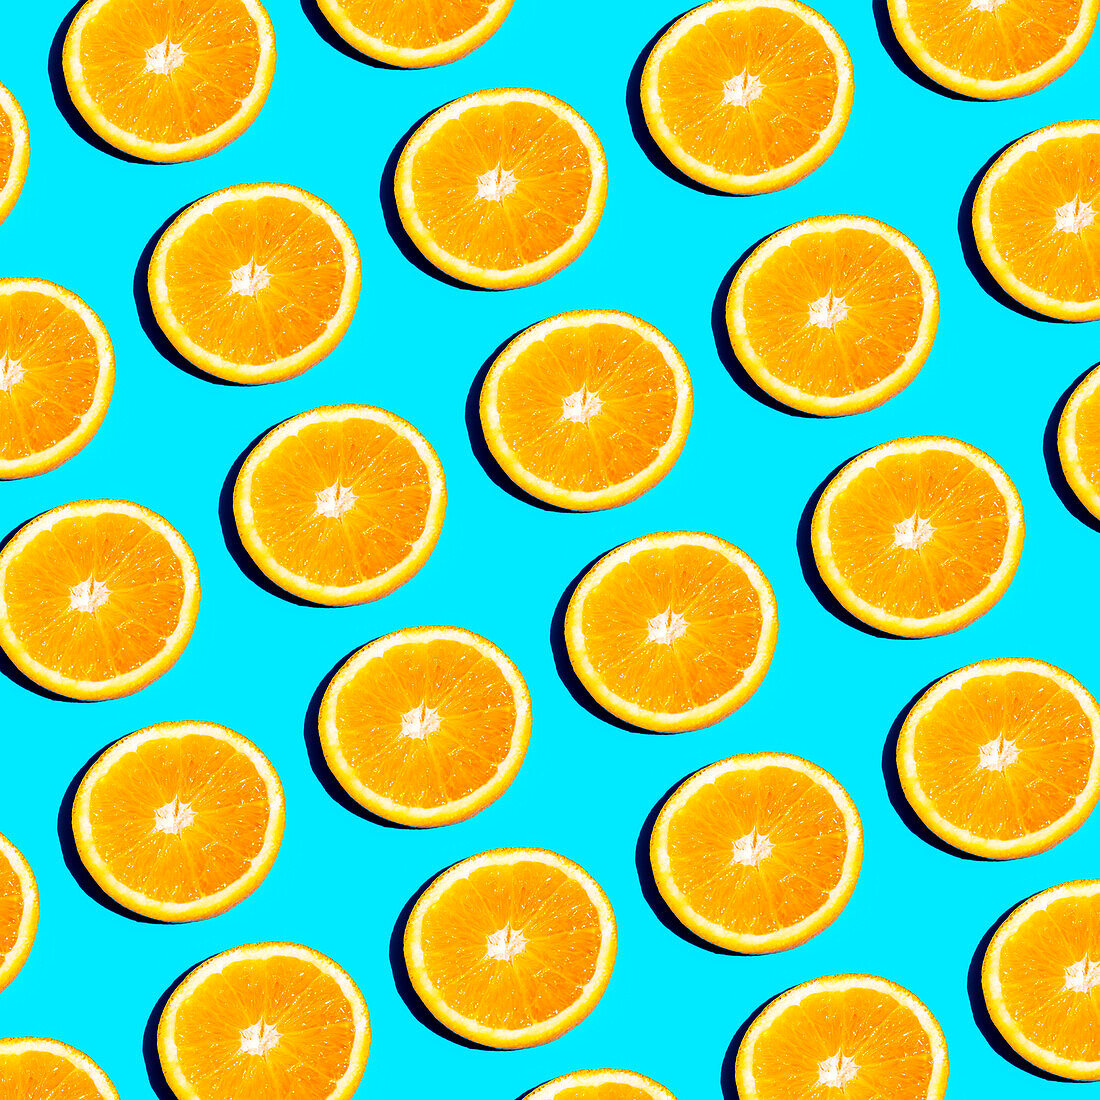 Von oben: Scheiben von leuchtend orangefarbenen Zitrusfrüchten, die in einem sich wiederholenden Muster auf einem hellblauen Hintergrund angeordnet sind und ein frisches und sommerliches Gefühl vermitteln